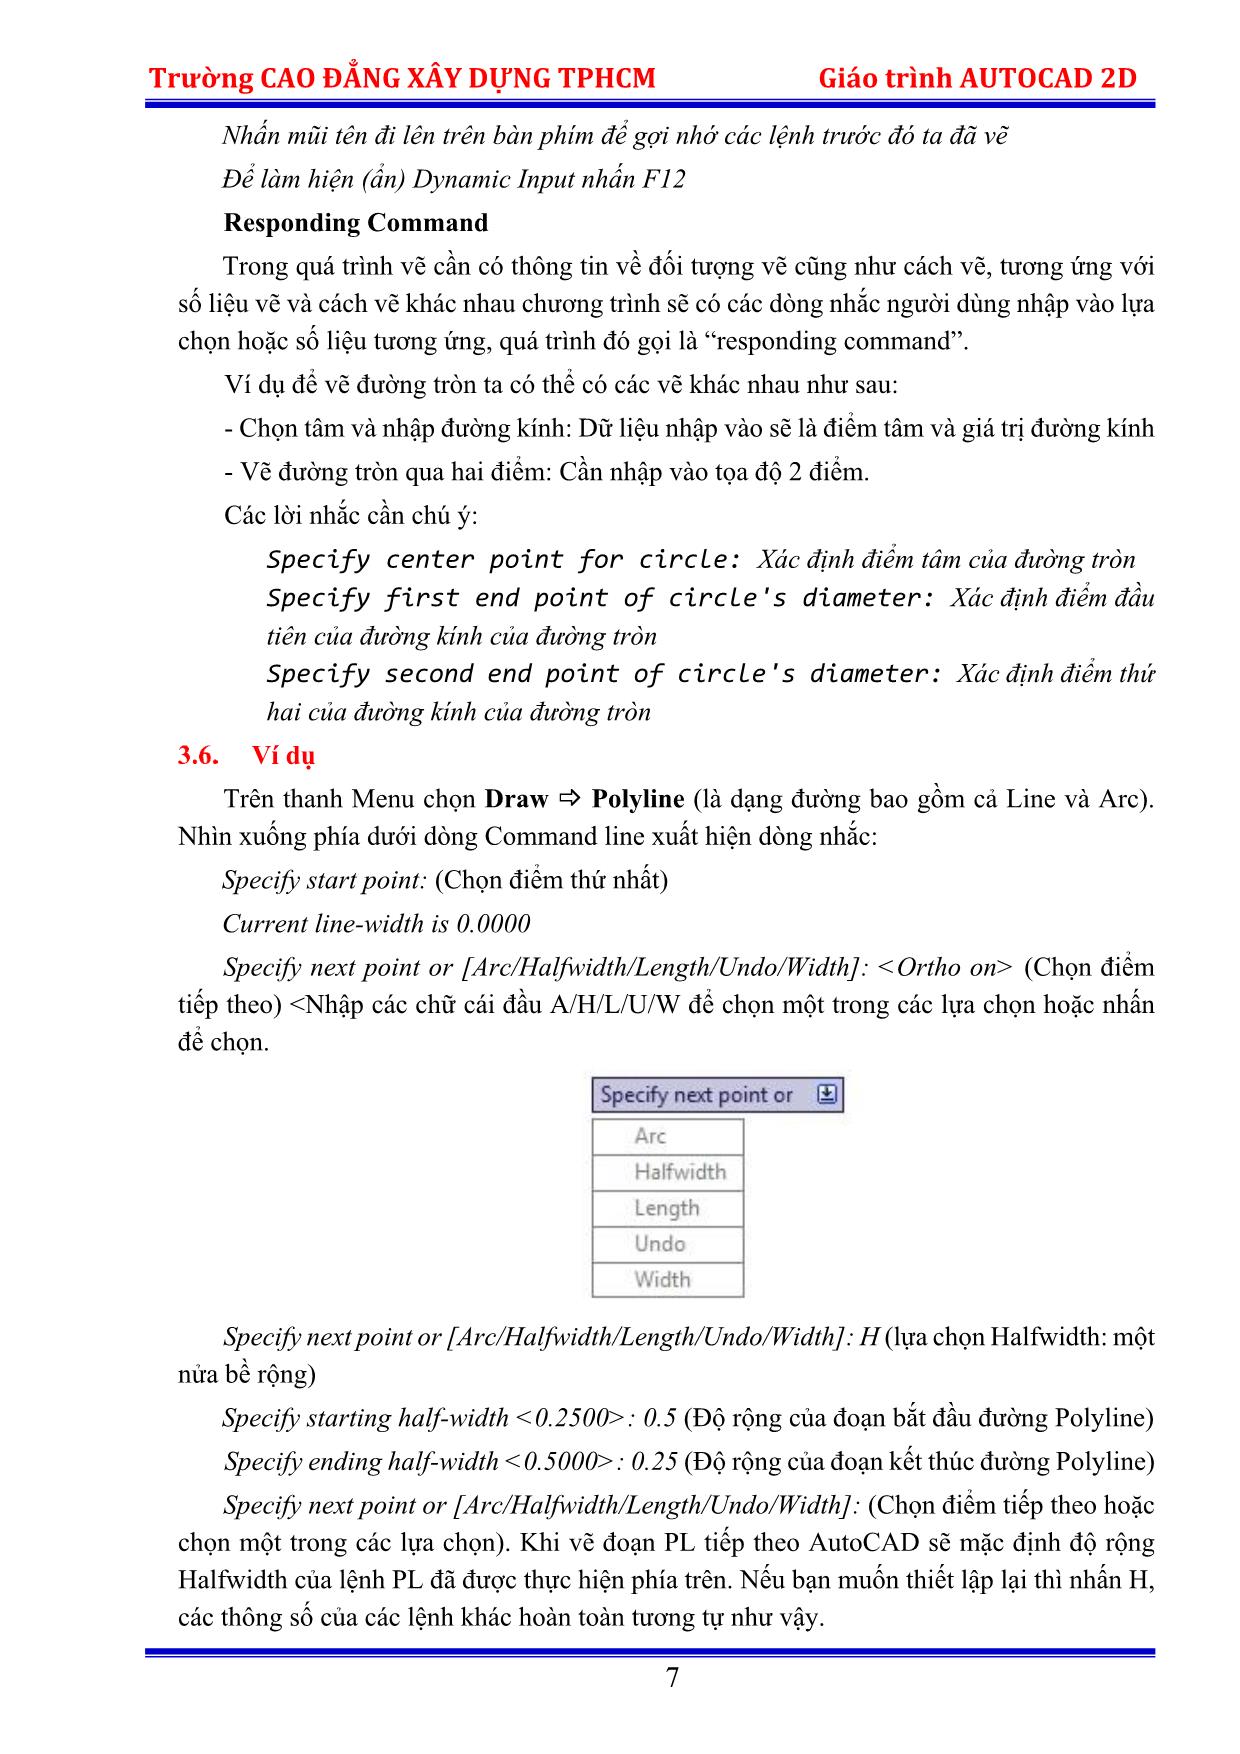 Giáo trình Autocad 2D trang 10